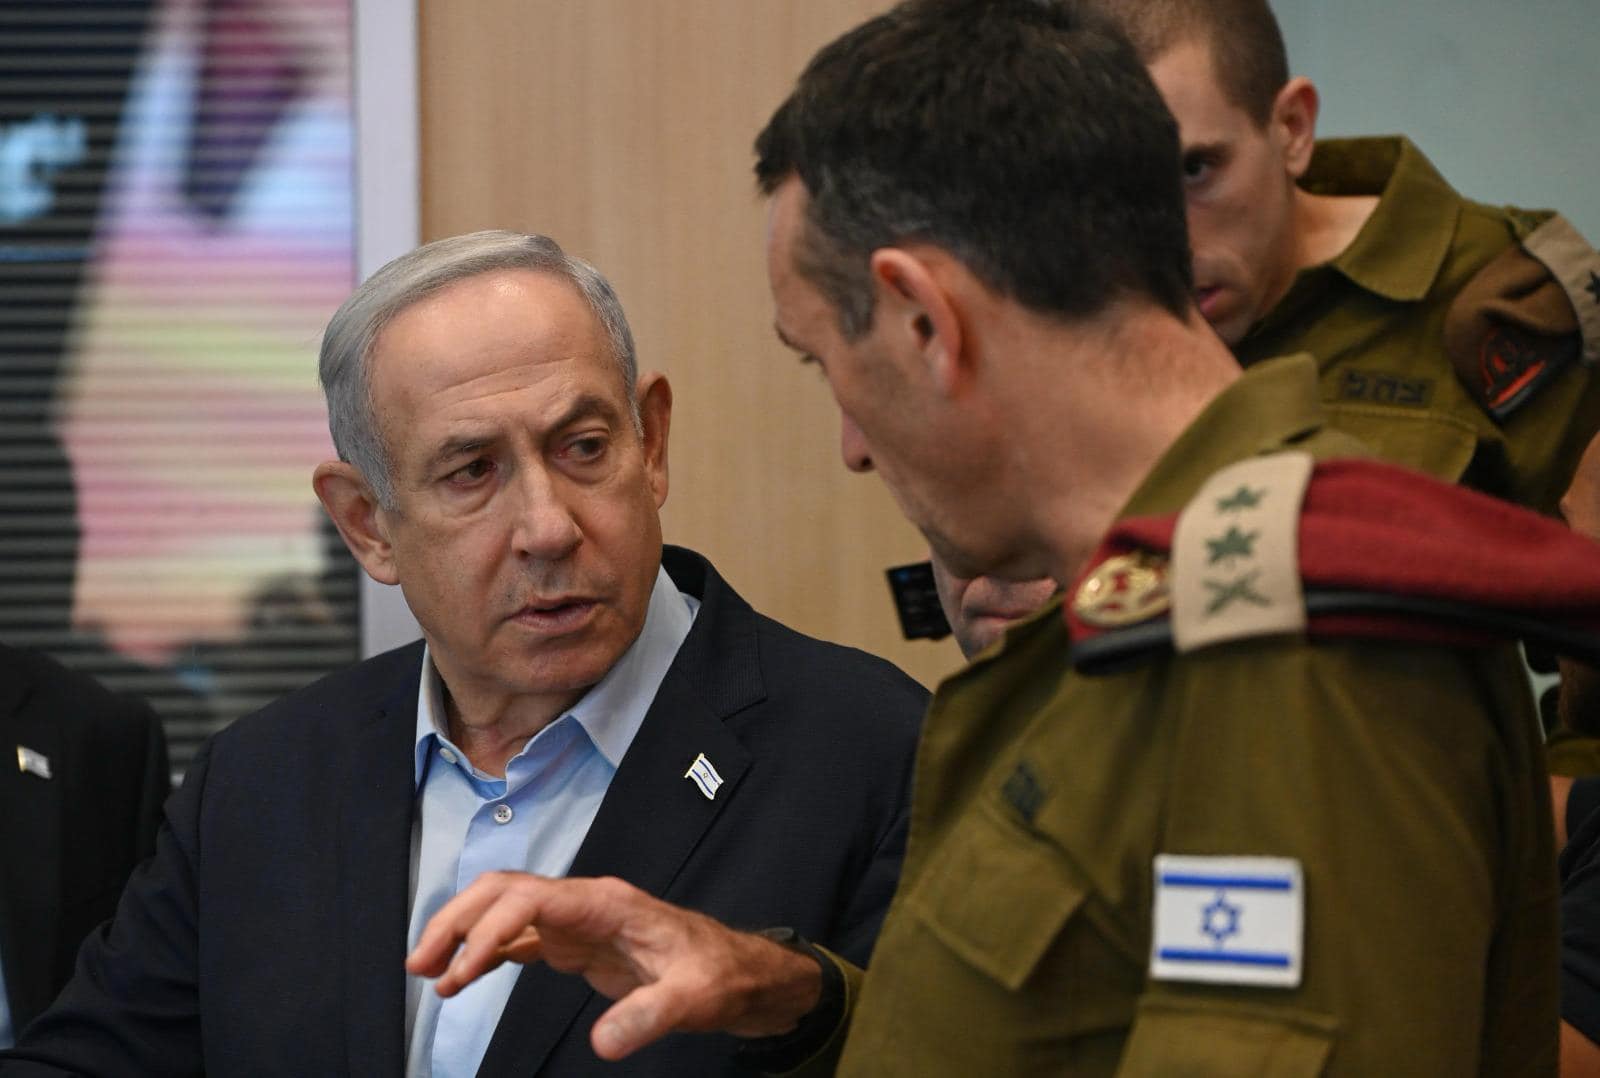 “Cualquiera que nos ataque, nosotros lo golpearemos”, dice Netanyahu en alusión a Irán